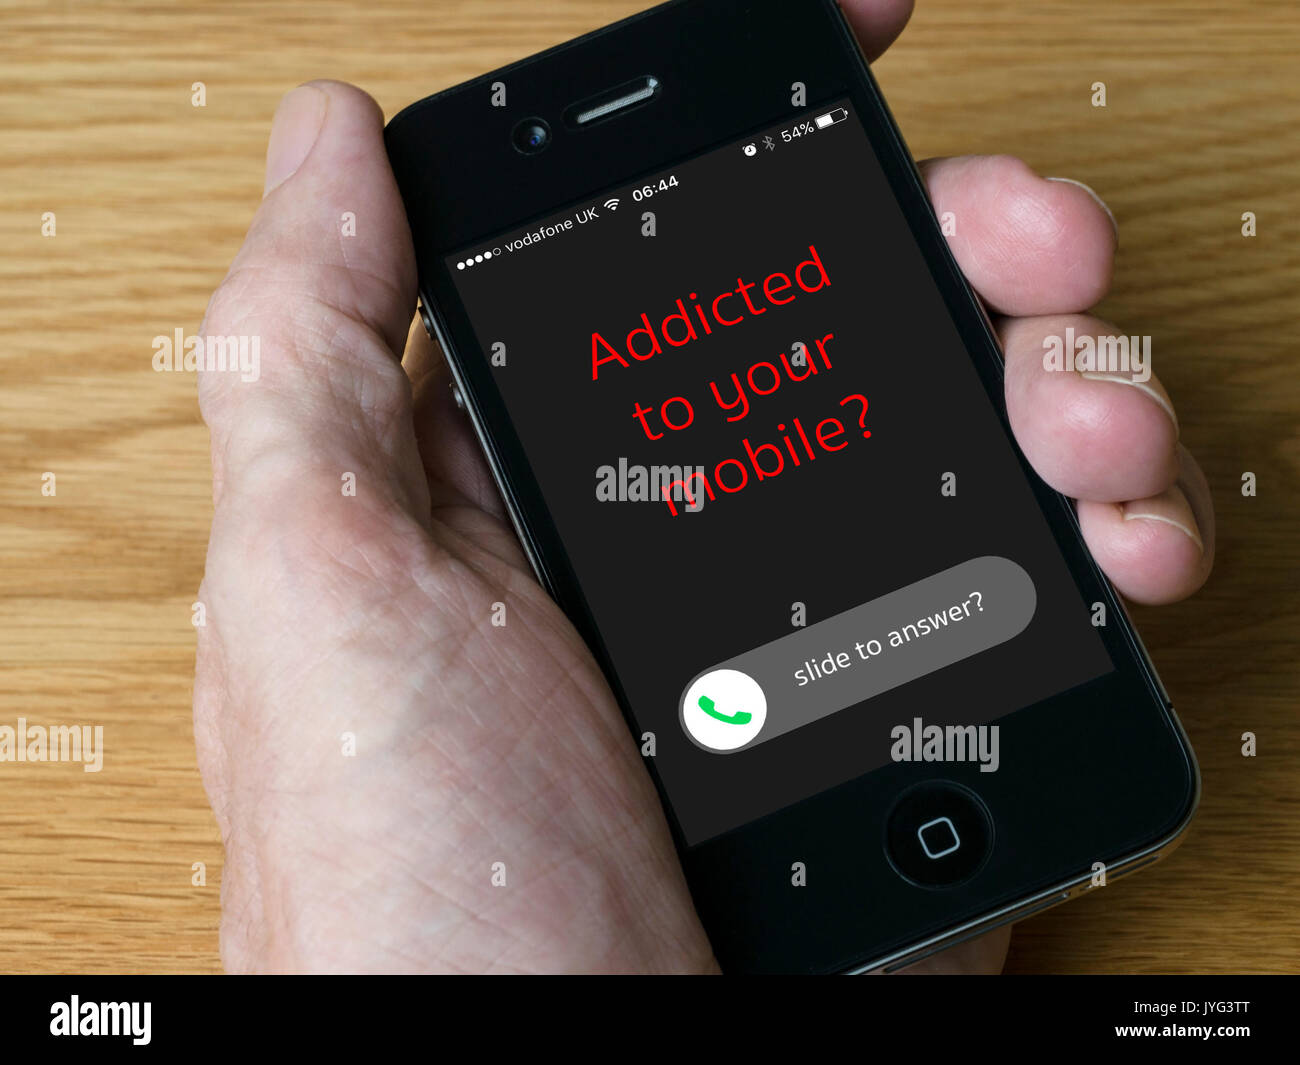 Palmare cellulare iPhone mostra messaggio "Addicted to your mobile?' concetto di immagine. Foto Stock